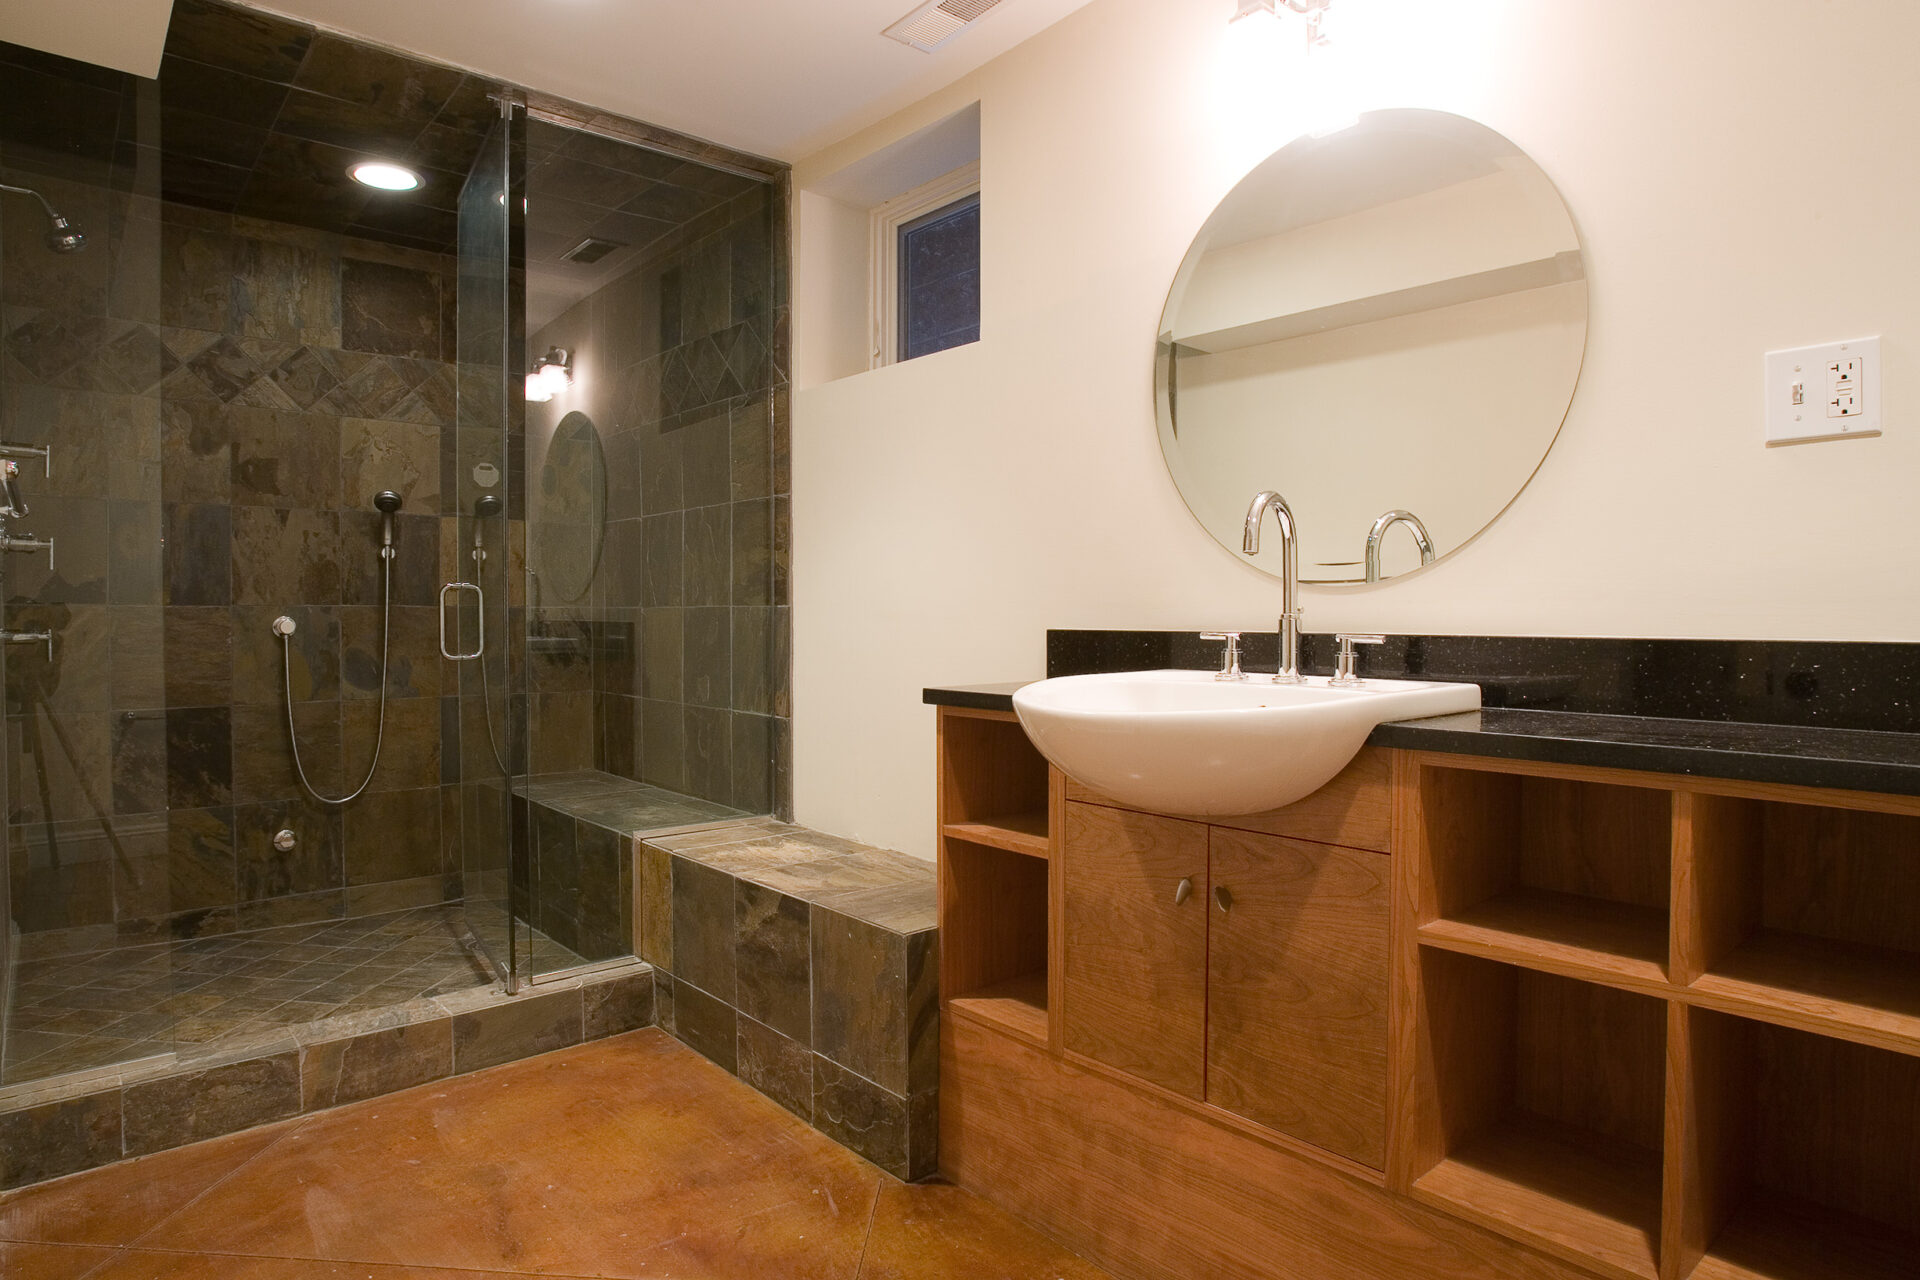 Modern bathroom with shower area, mirror, sink